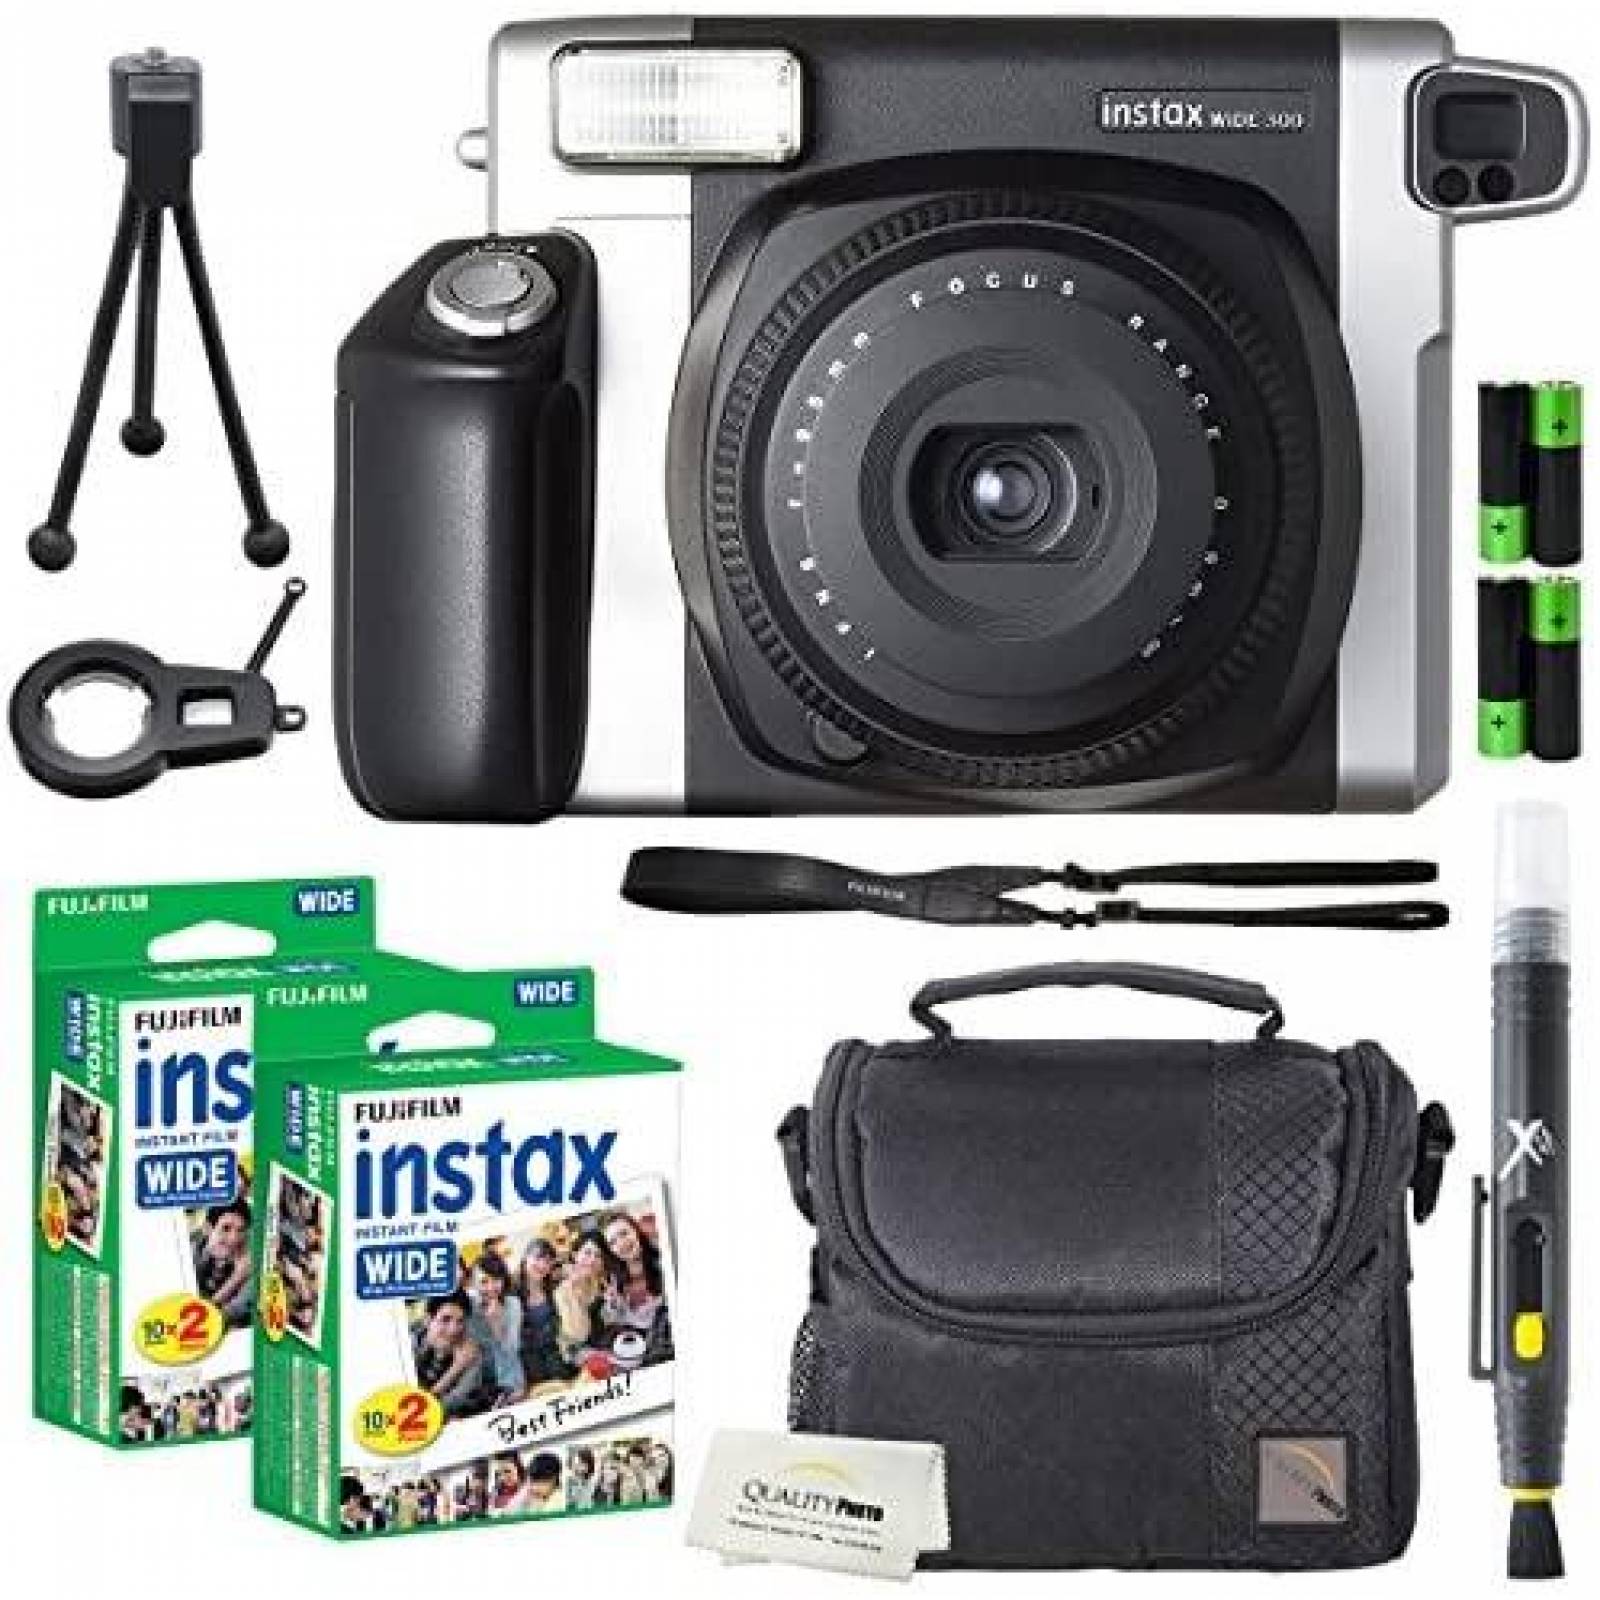 Camara Instax Fujifilm Wide 300 40 hojas + accesorios -Negro